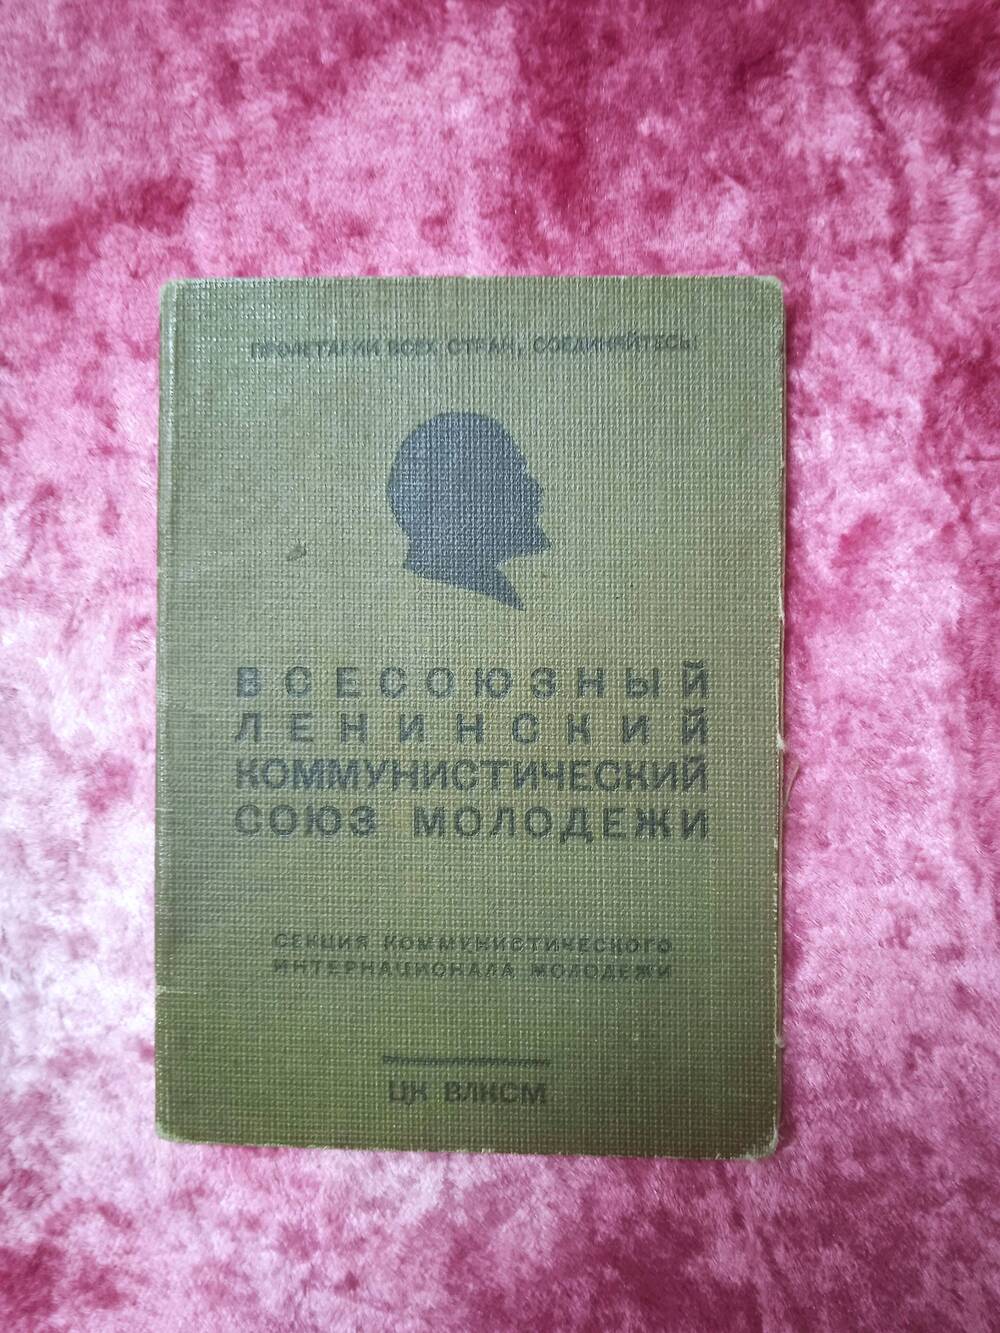 Билет комсомольский № 10135940 Малыгиной Лидии Ивановны.